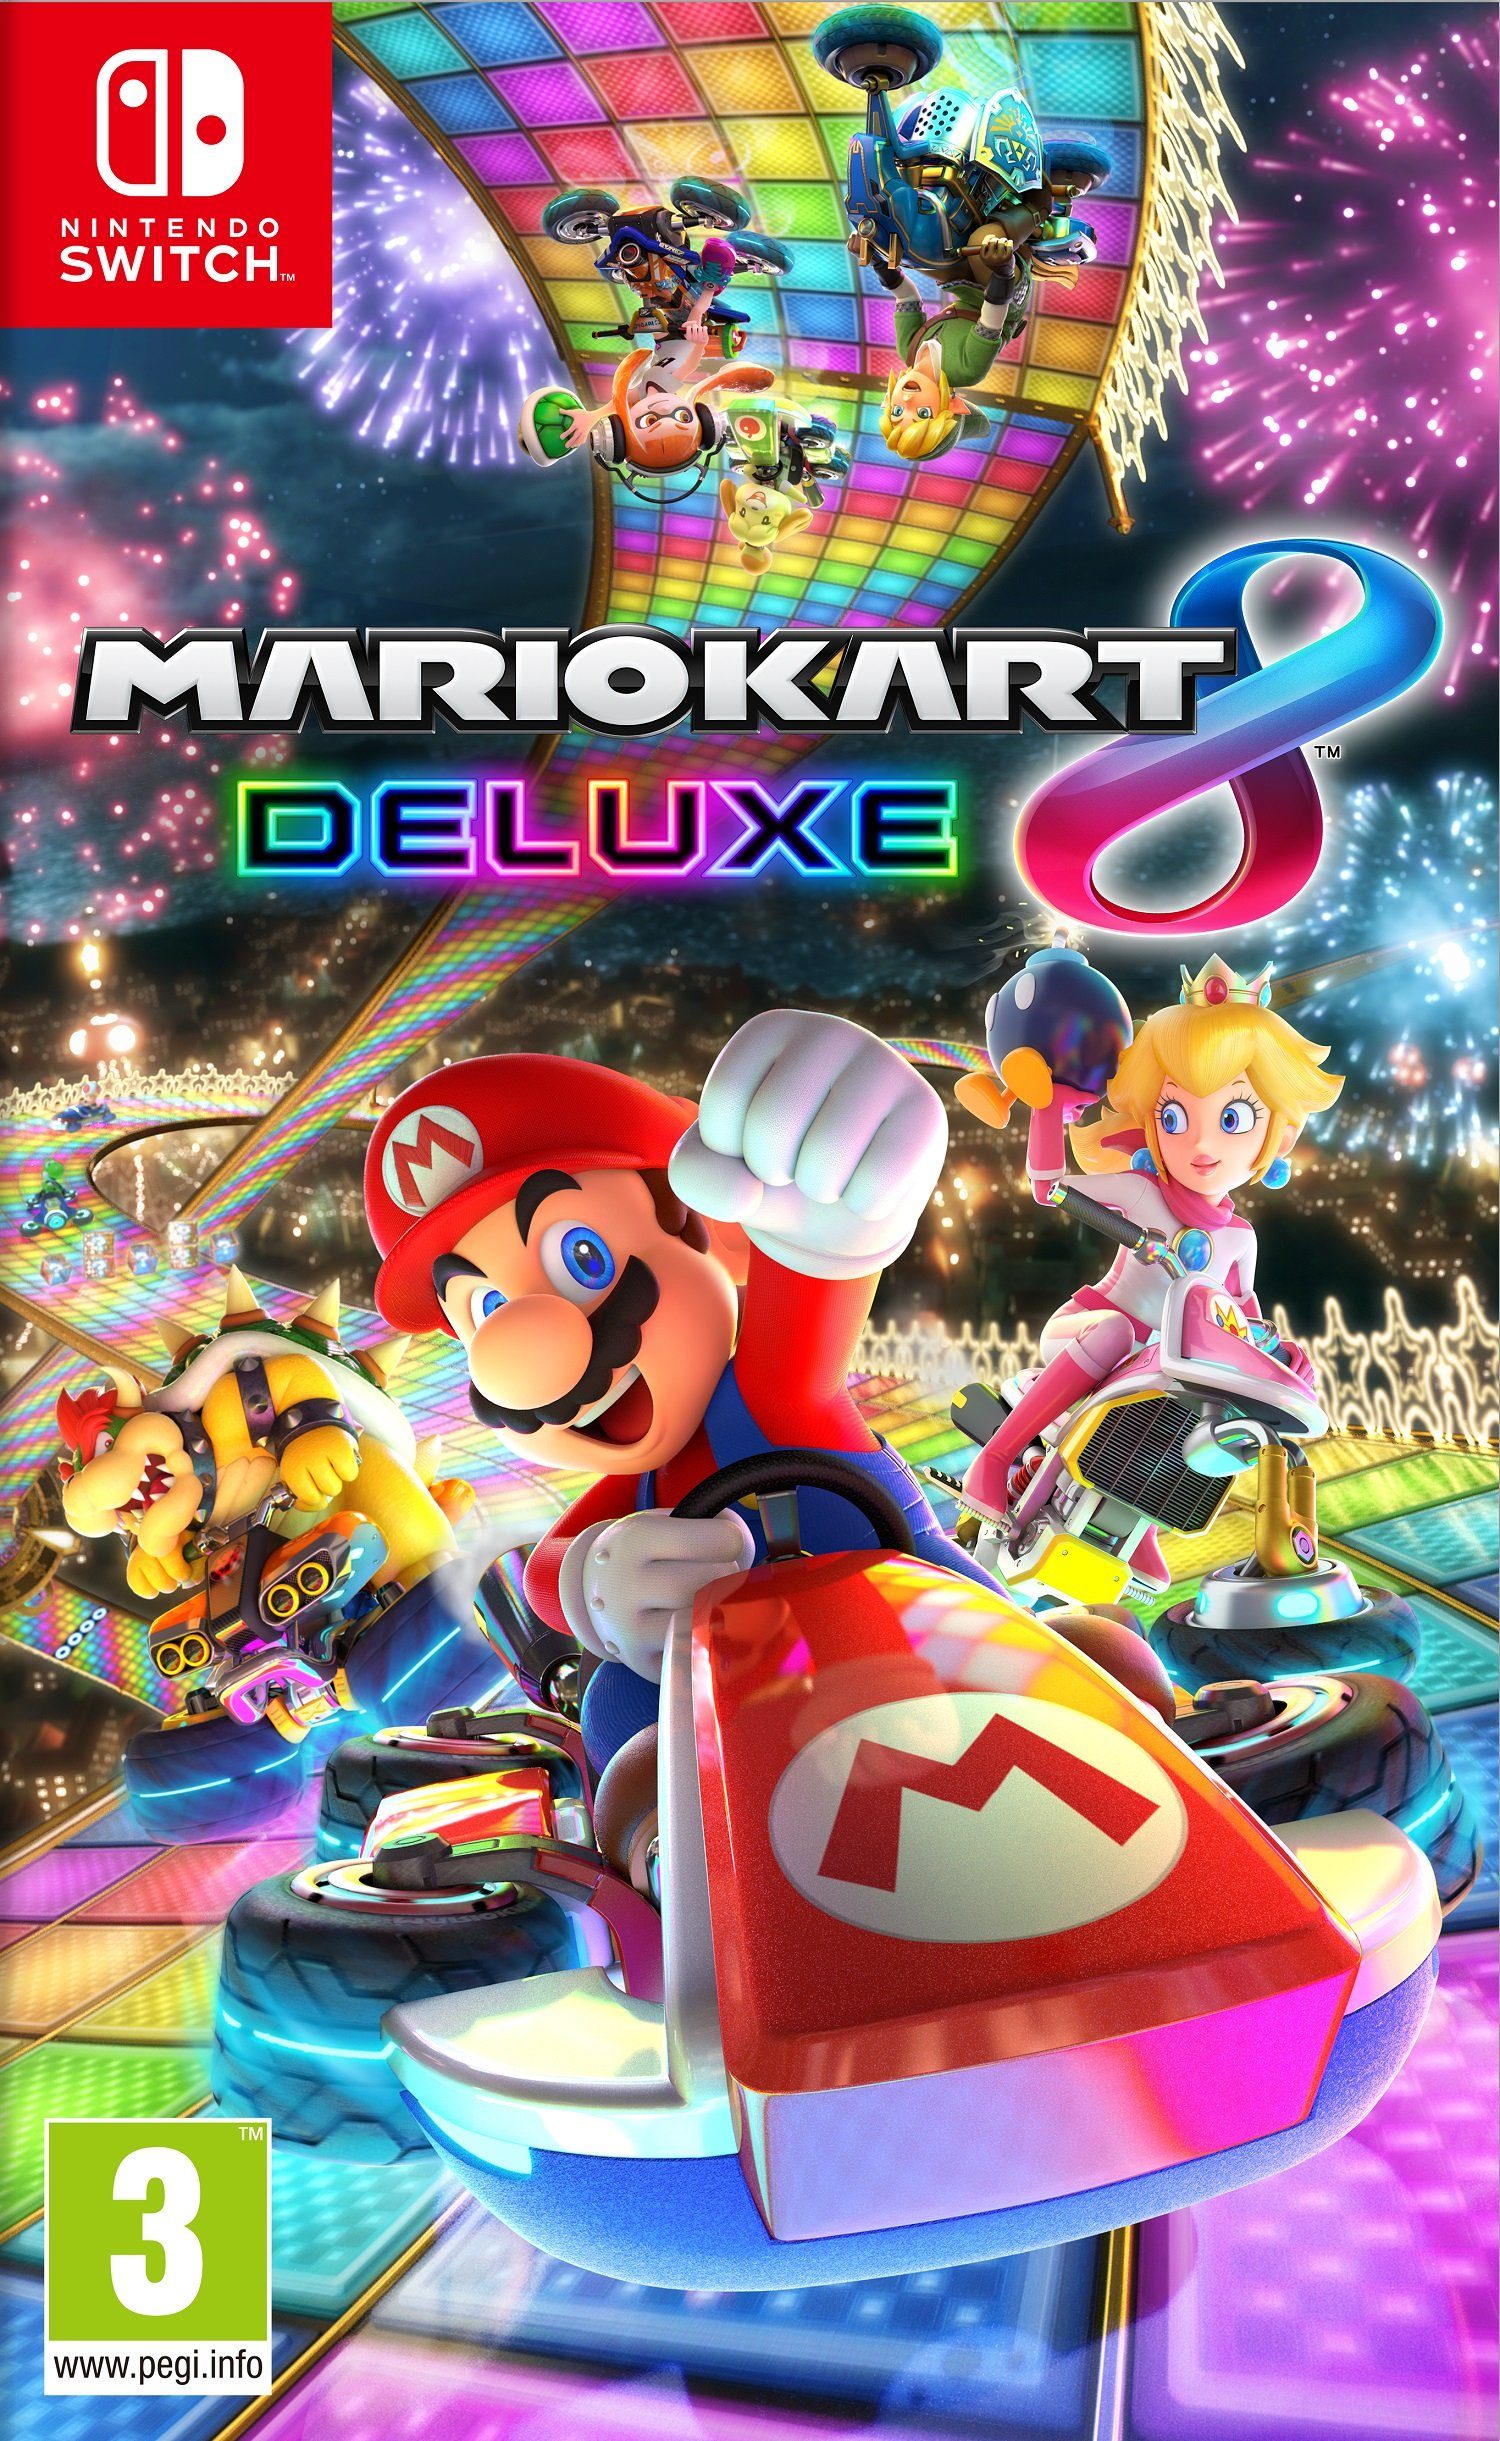 Nintendo Nintendo Switch, Mario Kart 8 DeLuxe